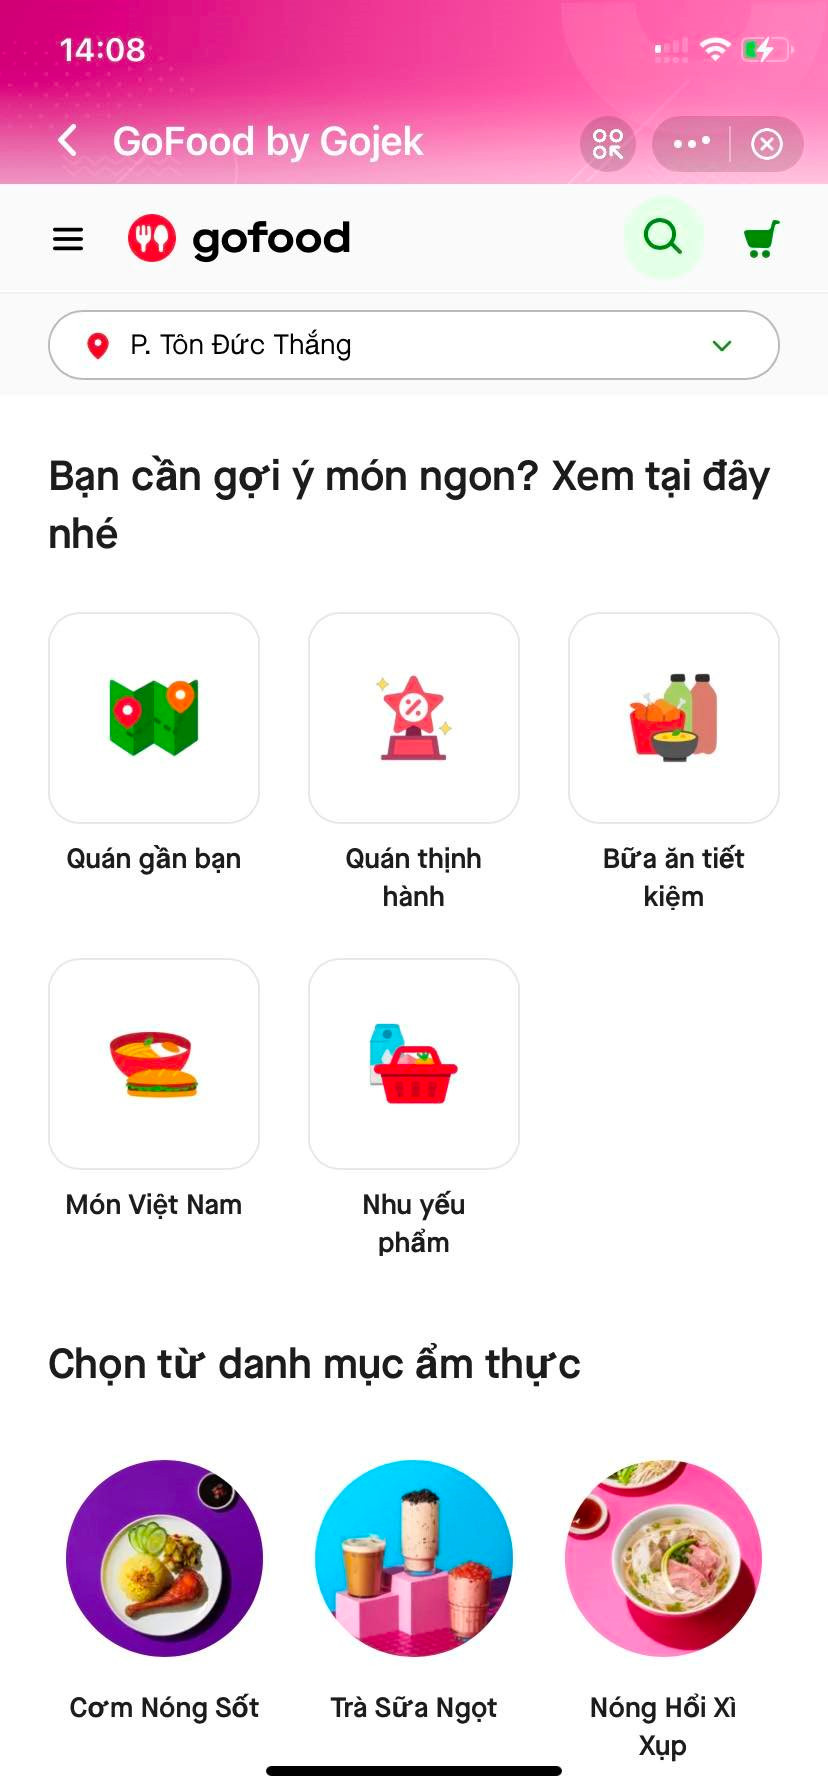 Gojek bất ngờ đưa tính năng đặt đồ ăn lên ứng dụng MoMo, tiếp cận tập người dùng hơn 31 triệu - Ảnh 2.